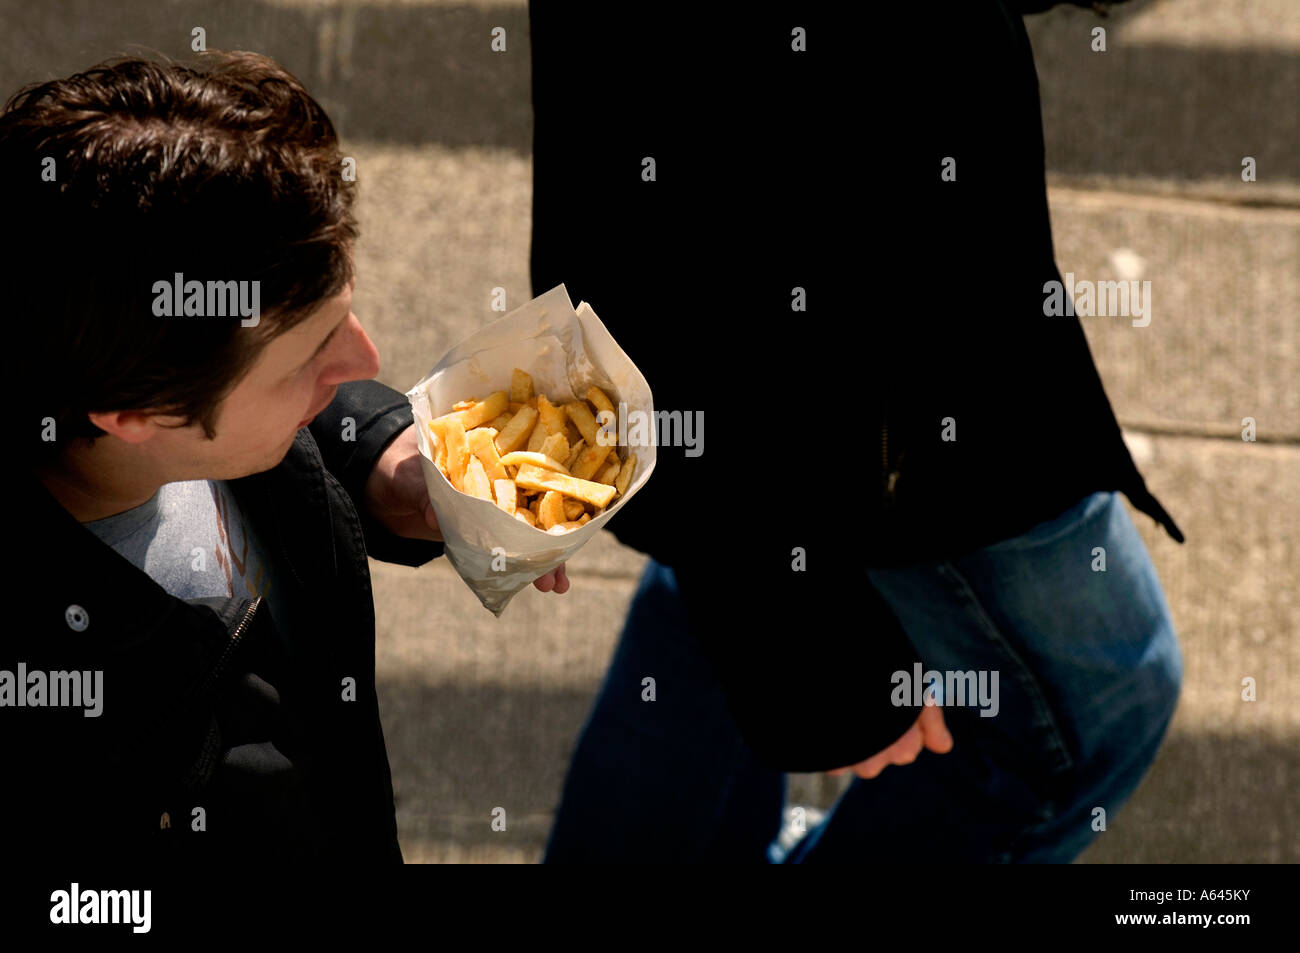 Ein Mann, der einen Sack Chips zum Mitnehmen hält. Bild von Jim Holden. Stockfoto